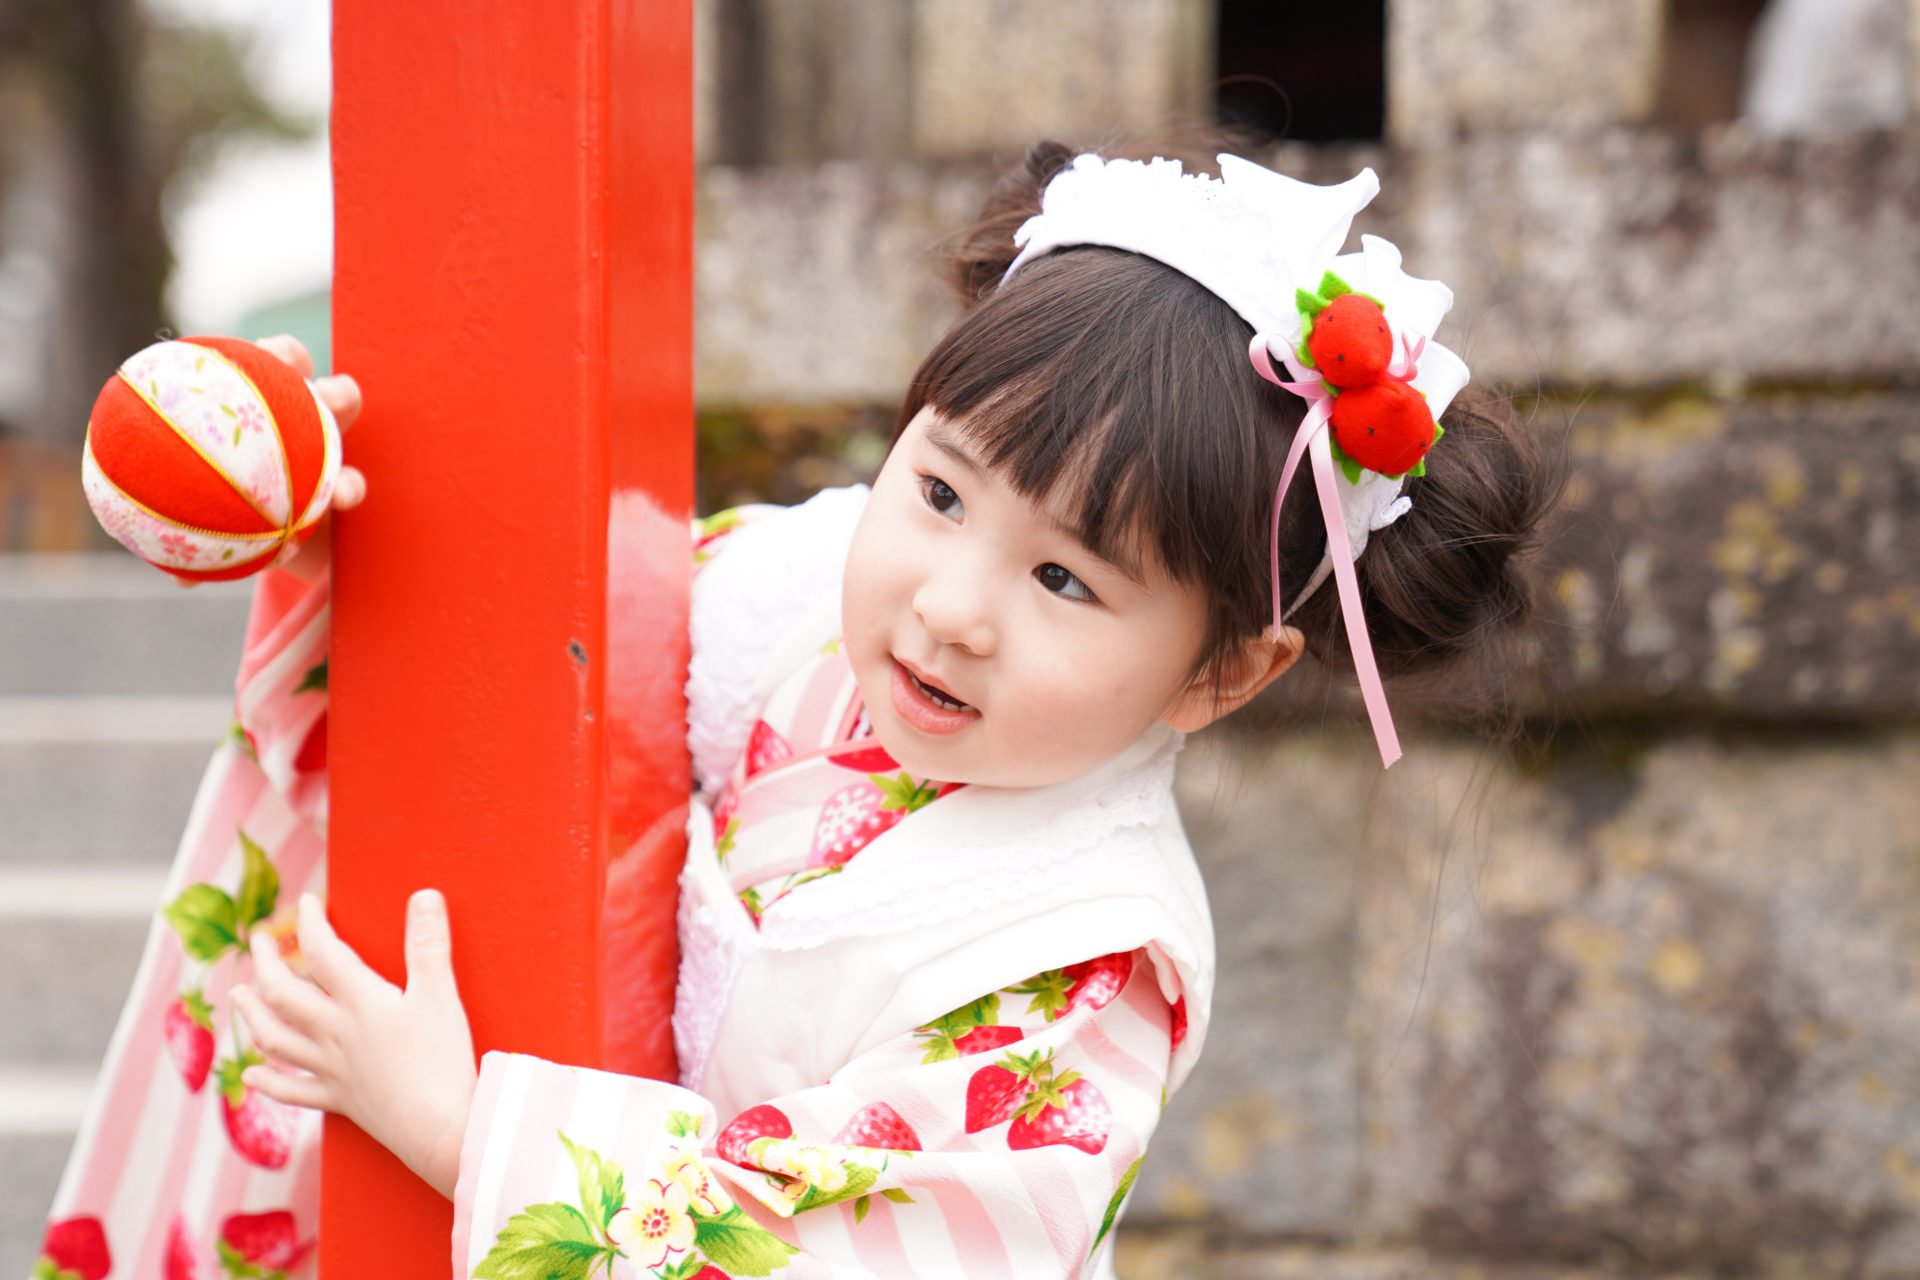 神社の境内で、ピンクと赤の着物を見に纏い、赤い柱から顔を覗かせる、3歳の女の子の七五三